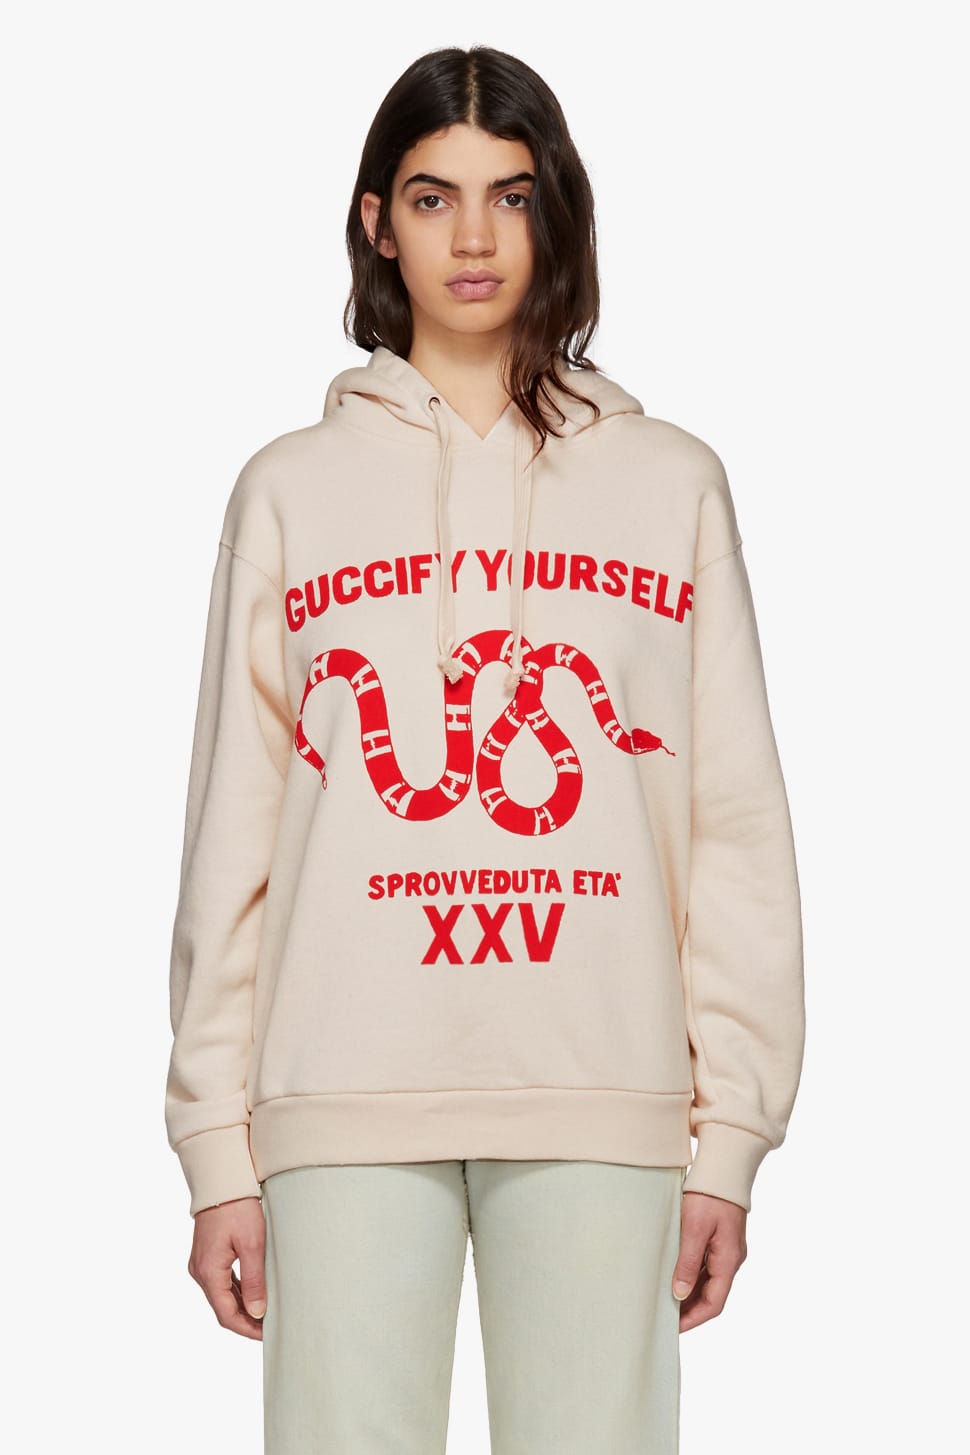 guccify yourself sweatshirt